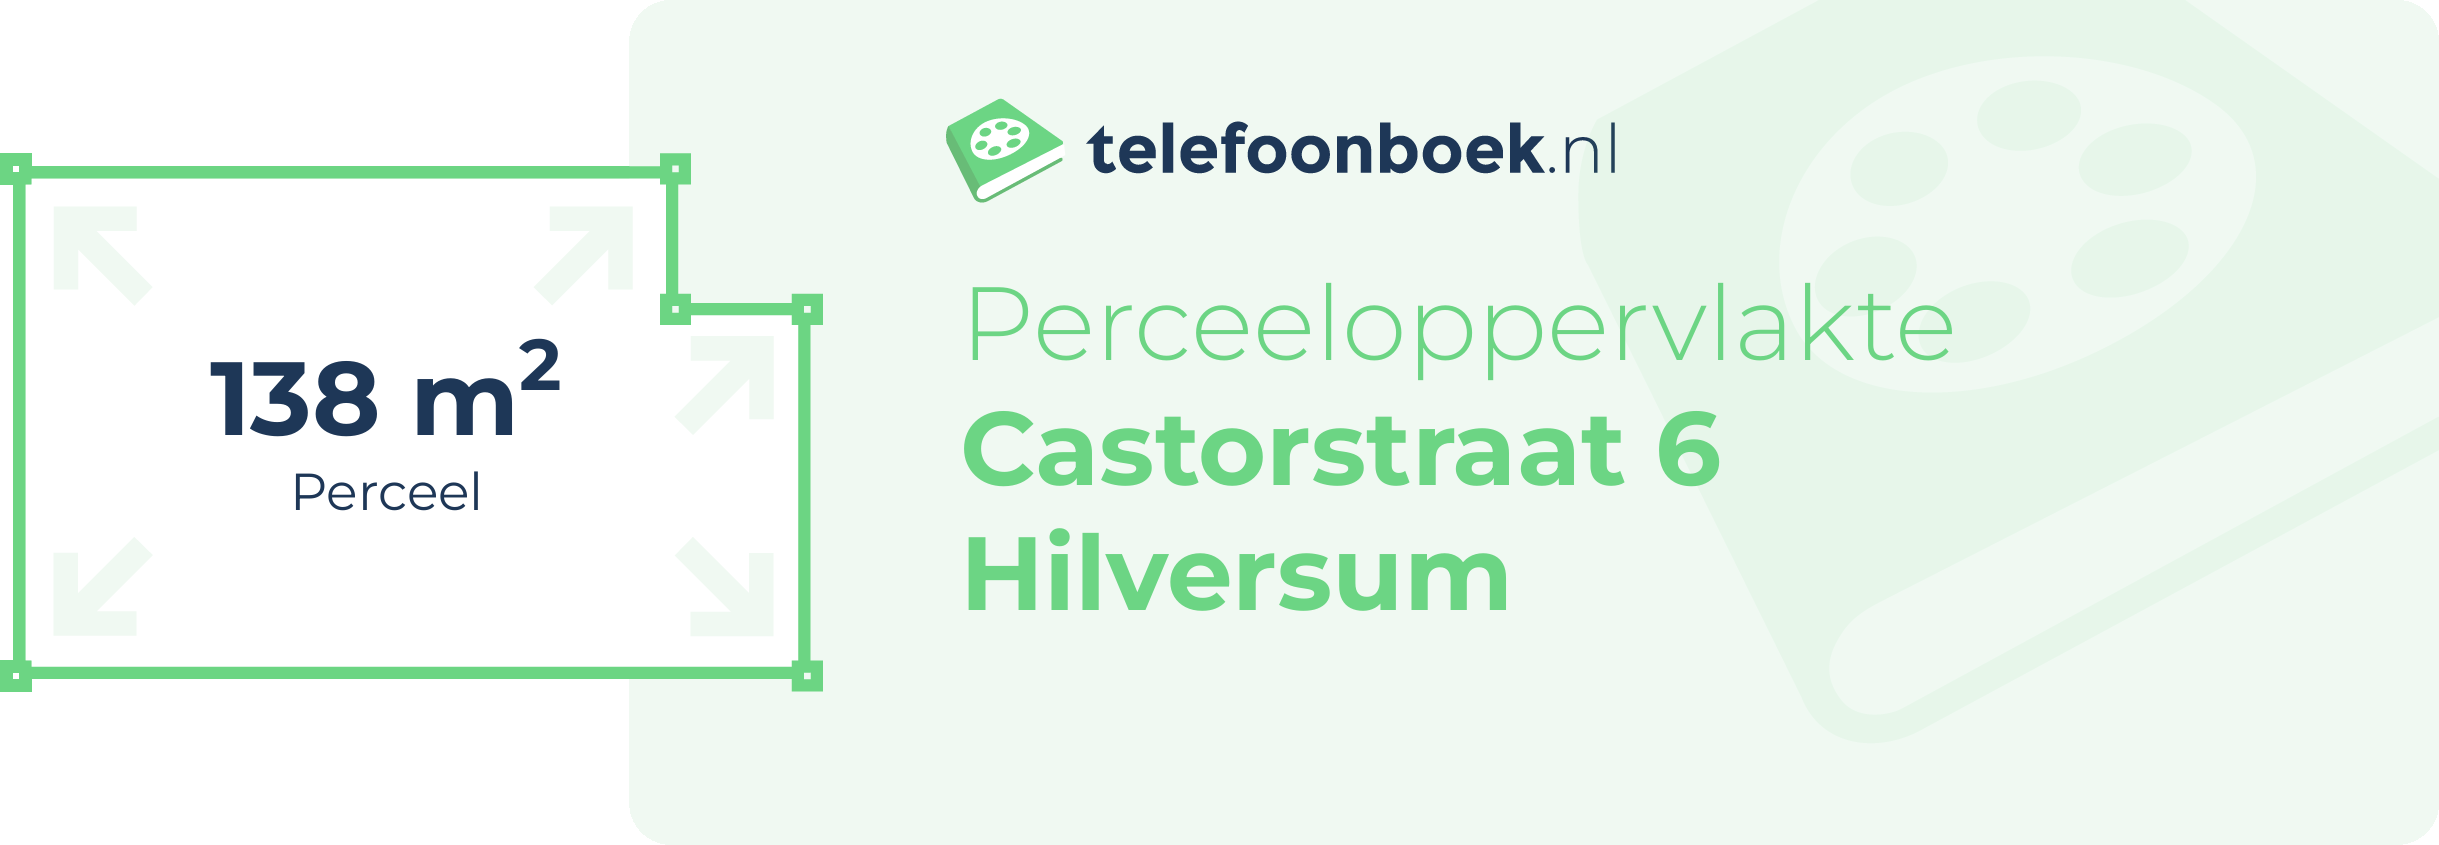 Perceeloppervlakte Castorstraat 6 Hilversum